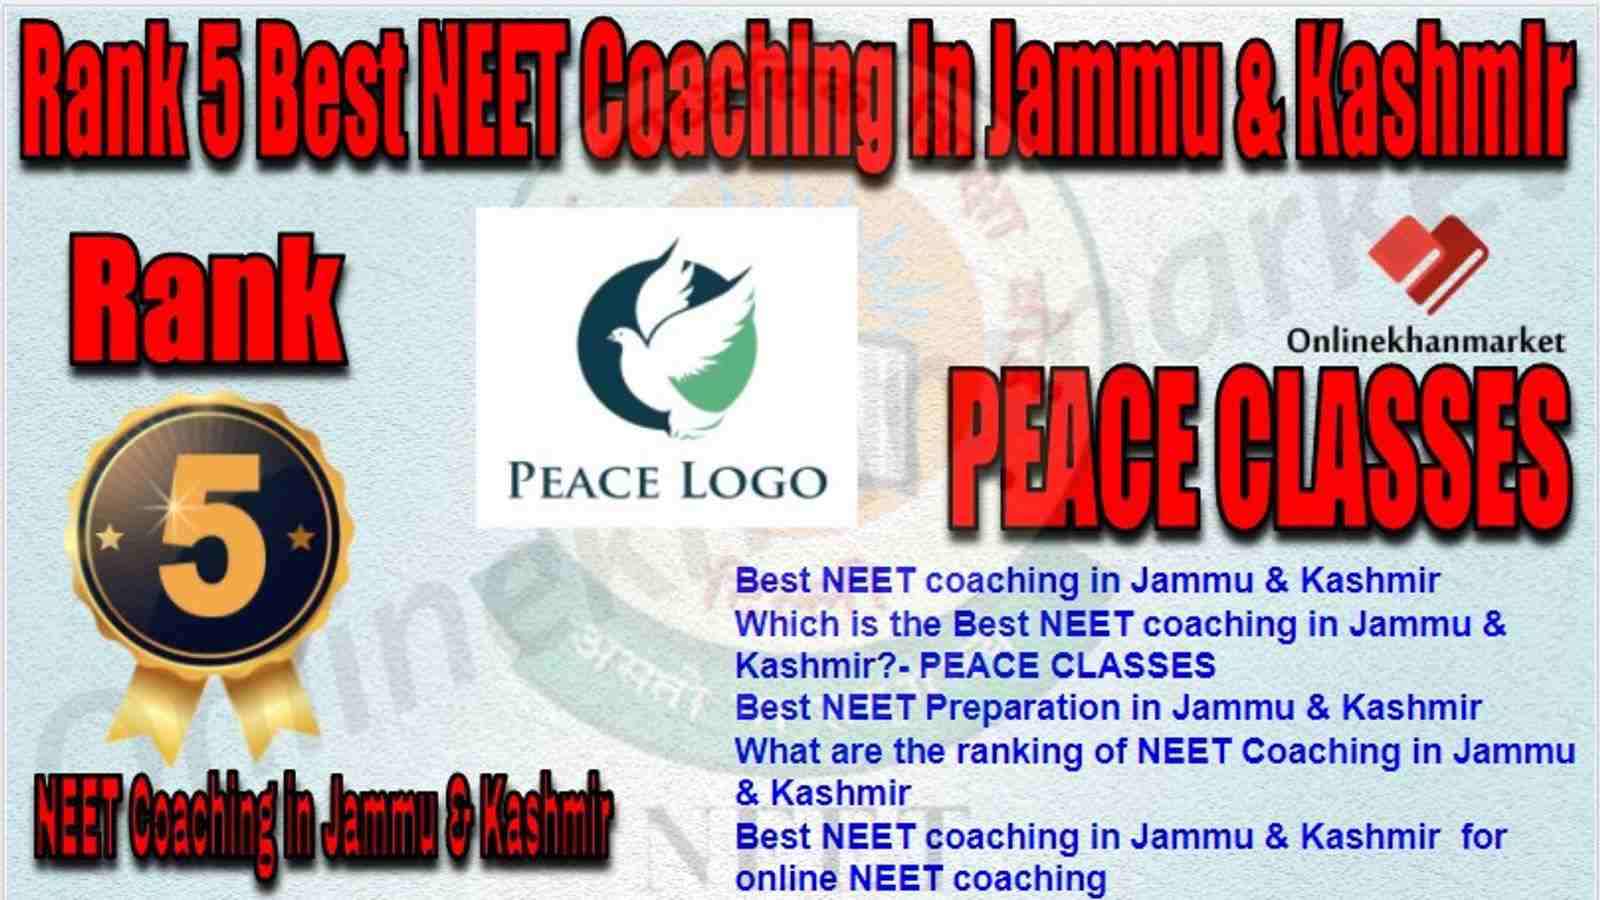 Rank 5 Best NEET Coaching in jammu &kashmir